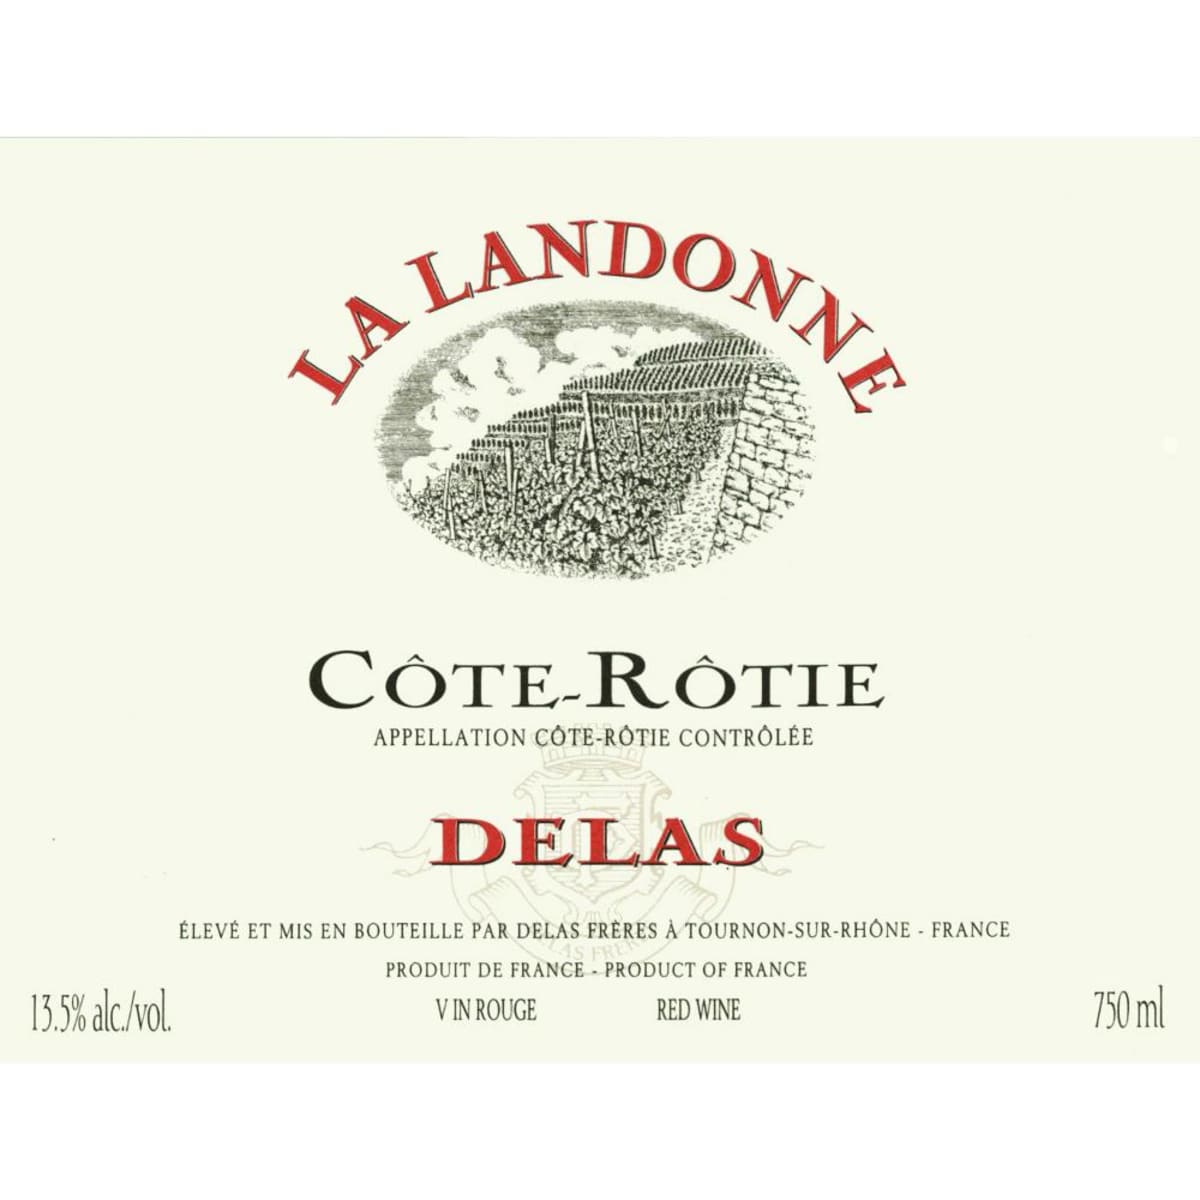 Delas Cote Rotie La Landonne 2009 Front Label